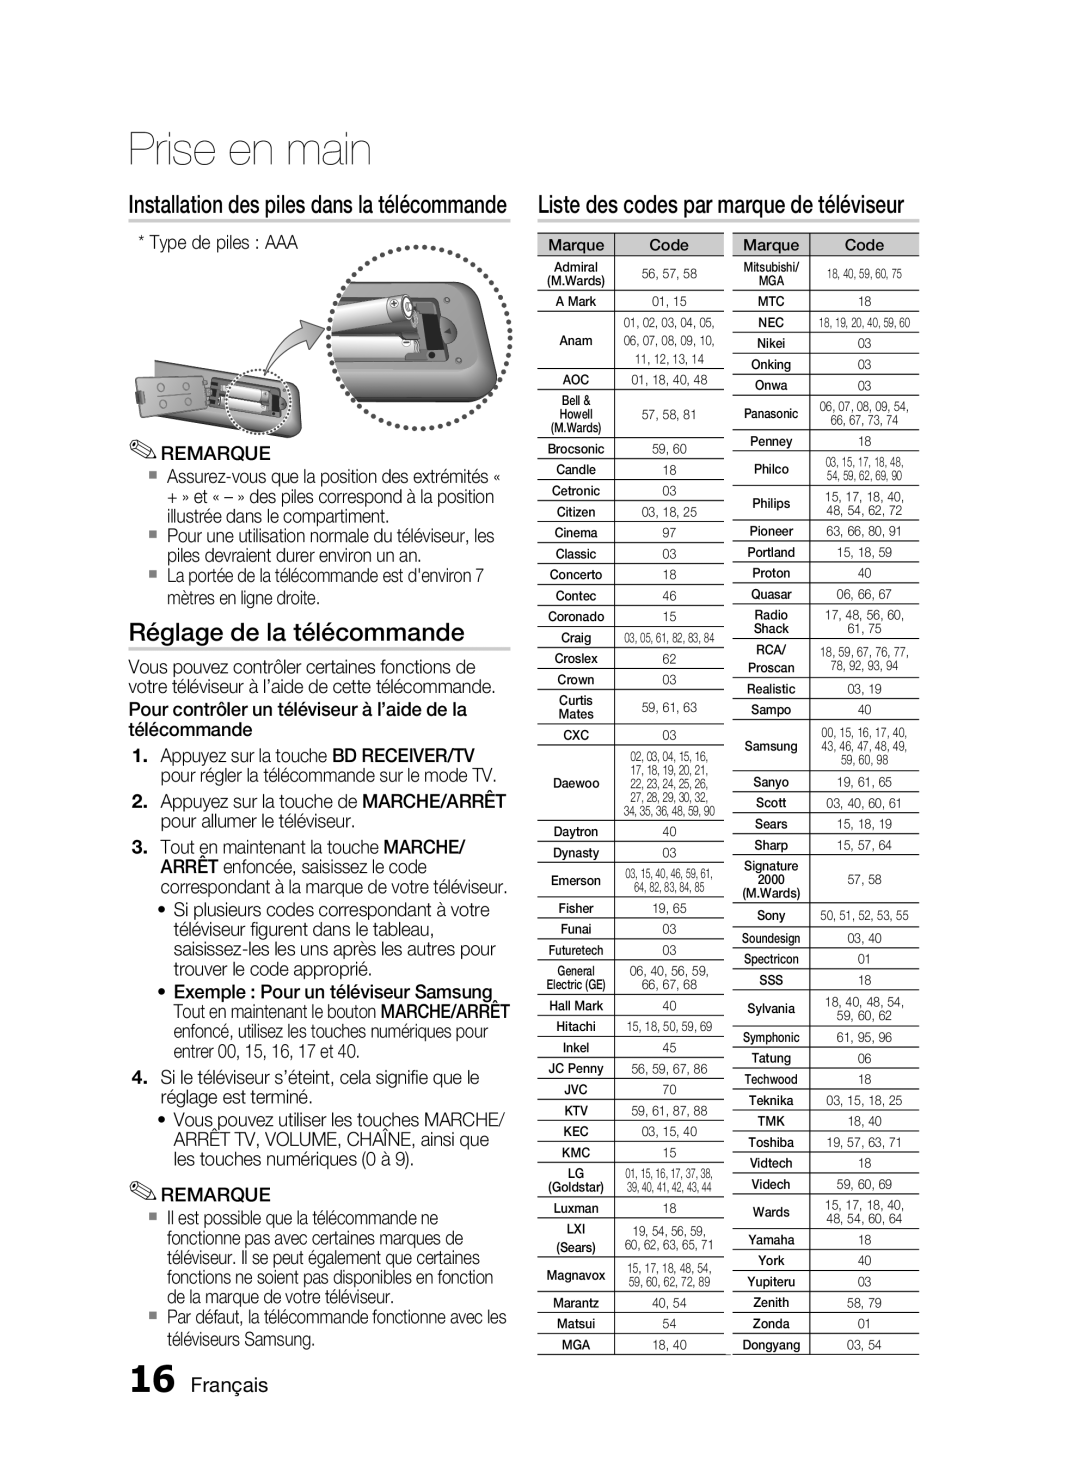 Samsung HT-C6200/XEF manual Liste des codes par marque de téléviseur, Réglage de la télécommande, Français, Prise en main 